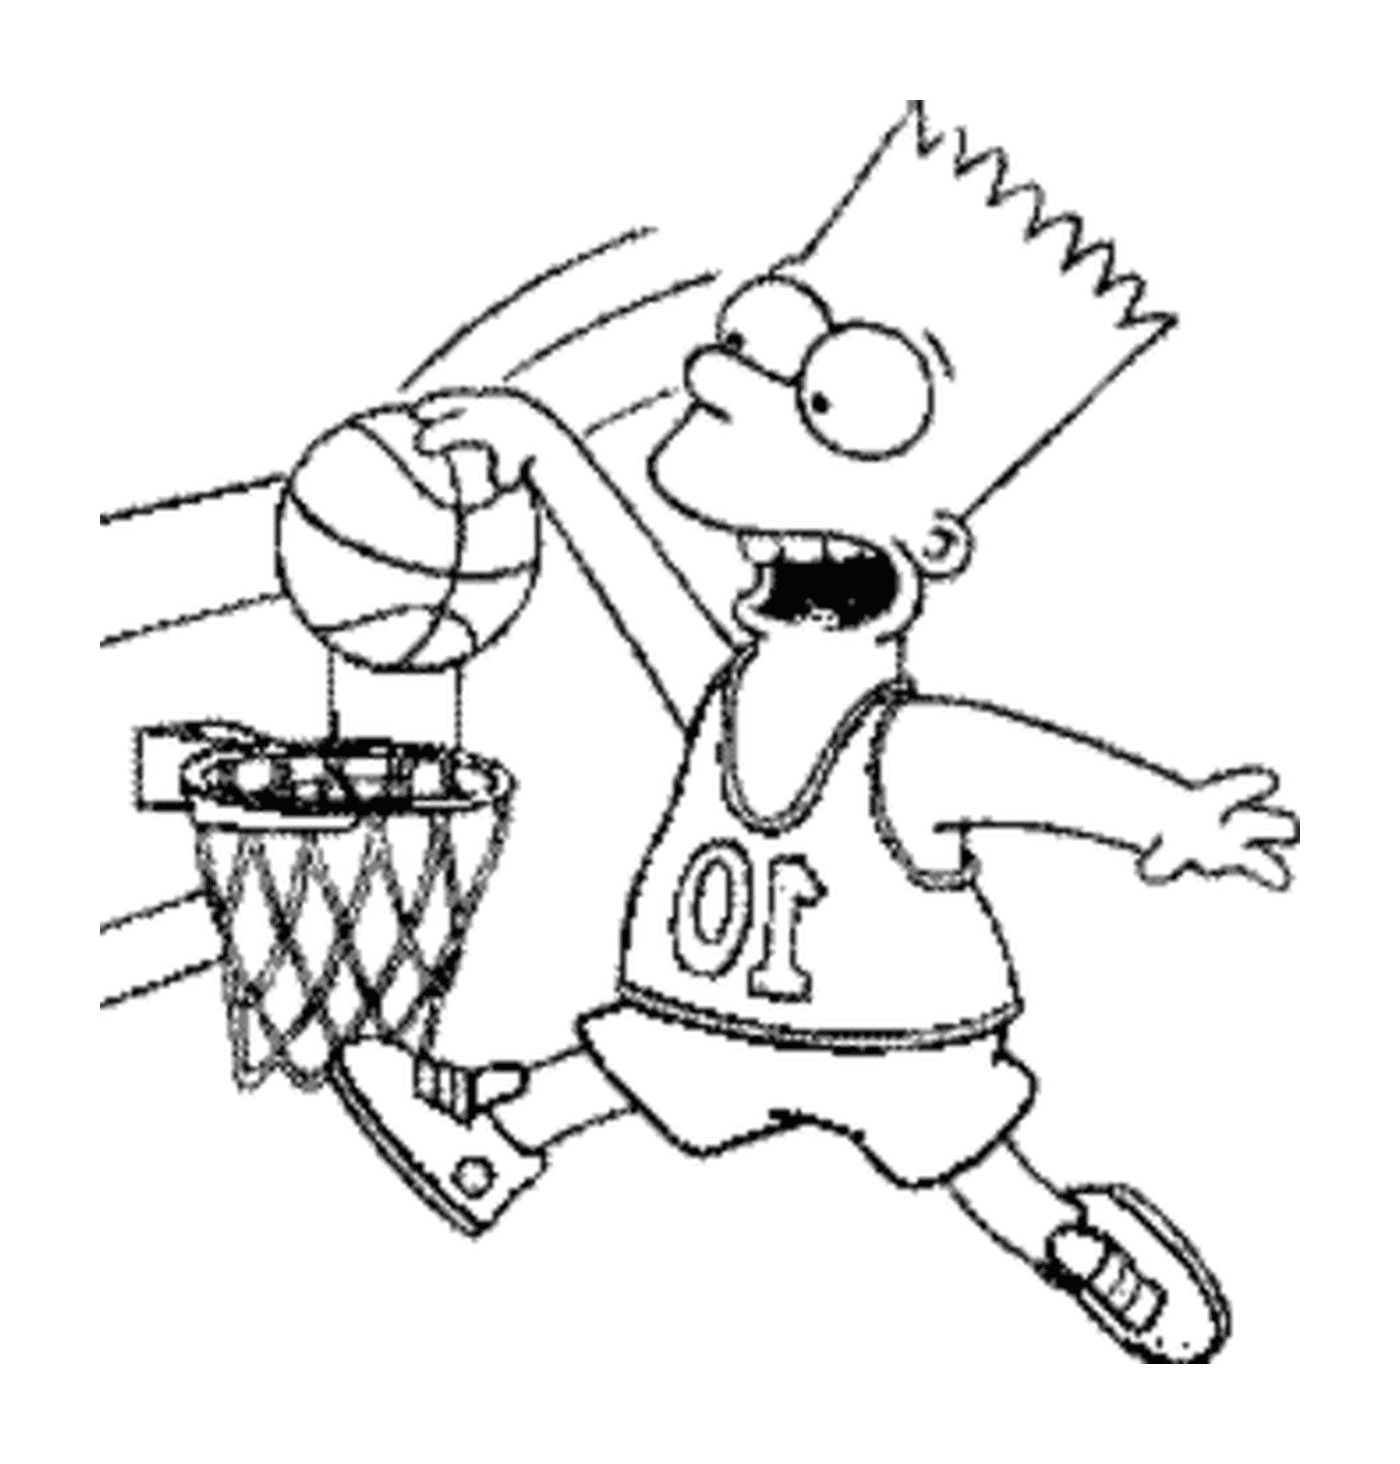  Барт играет в баскетбол 